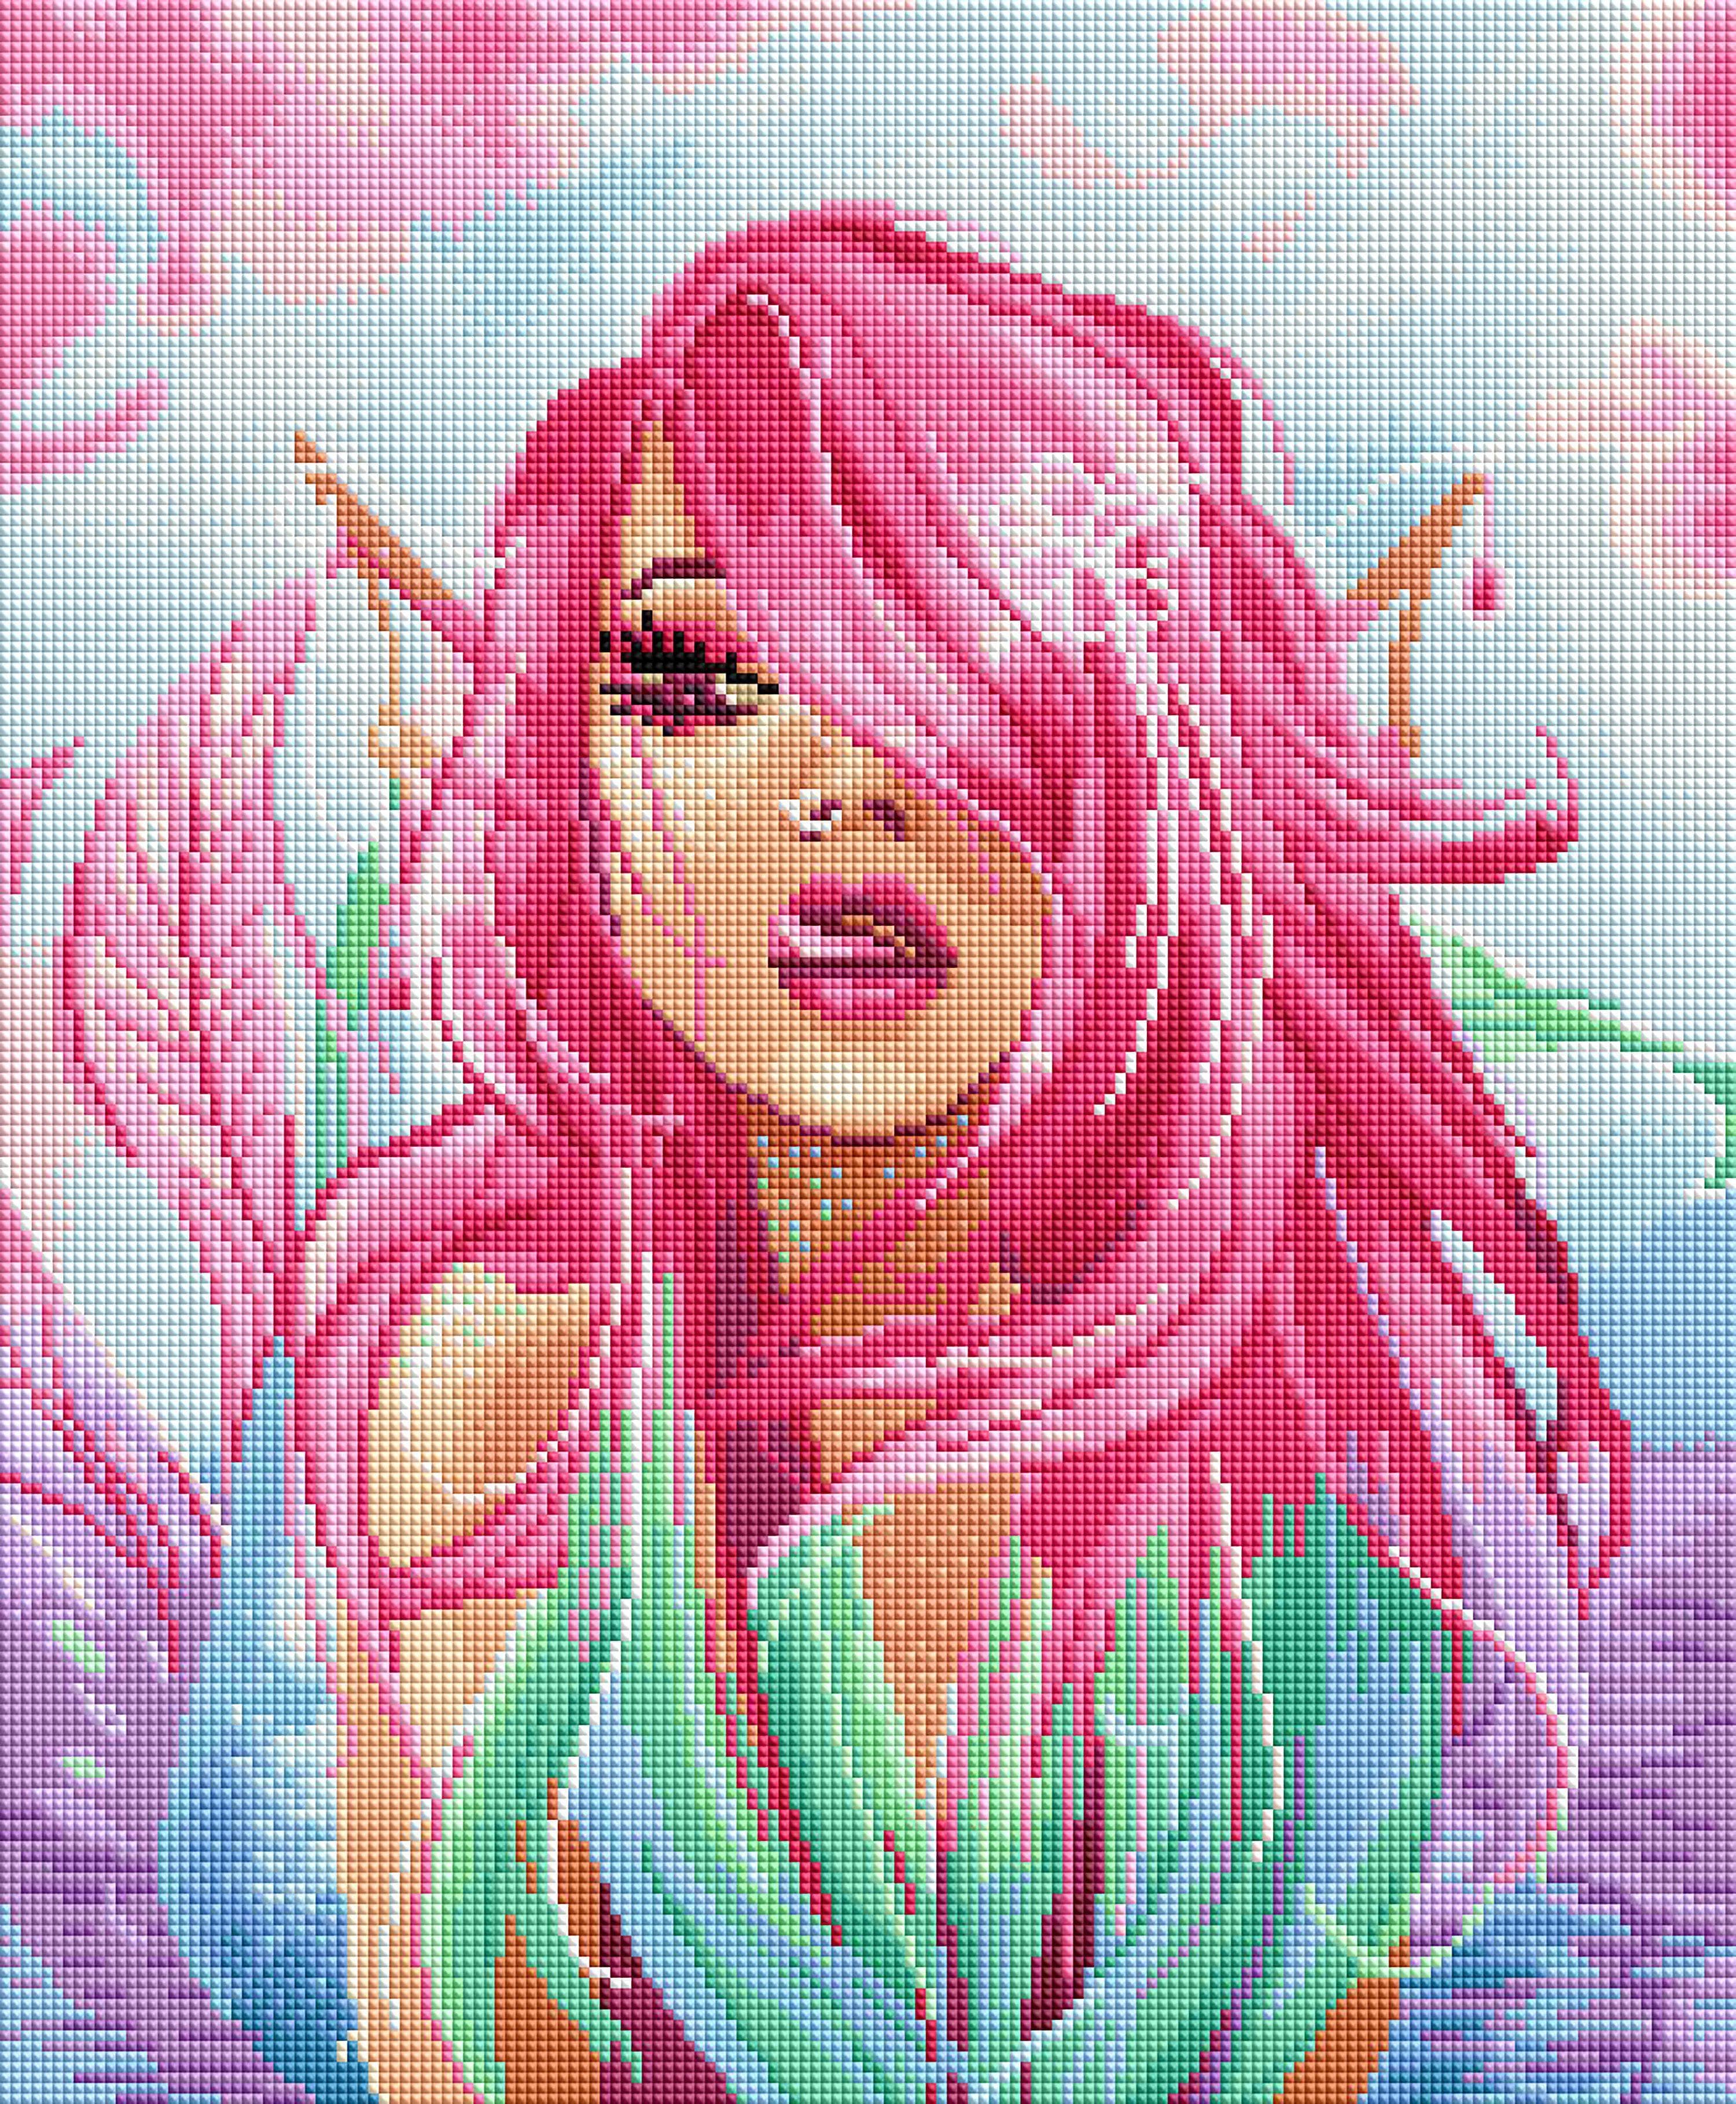 Diamond Painting - Pink Lady 